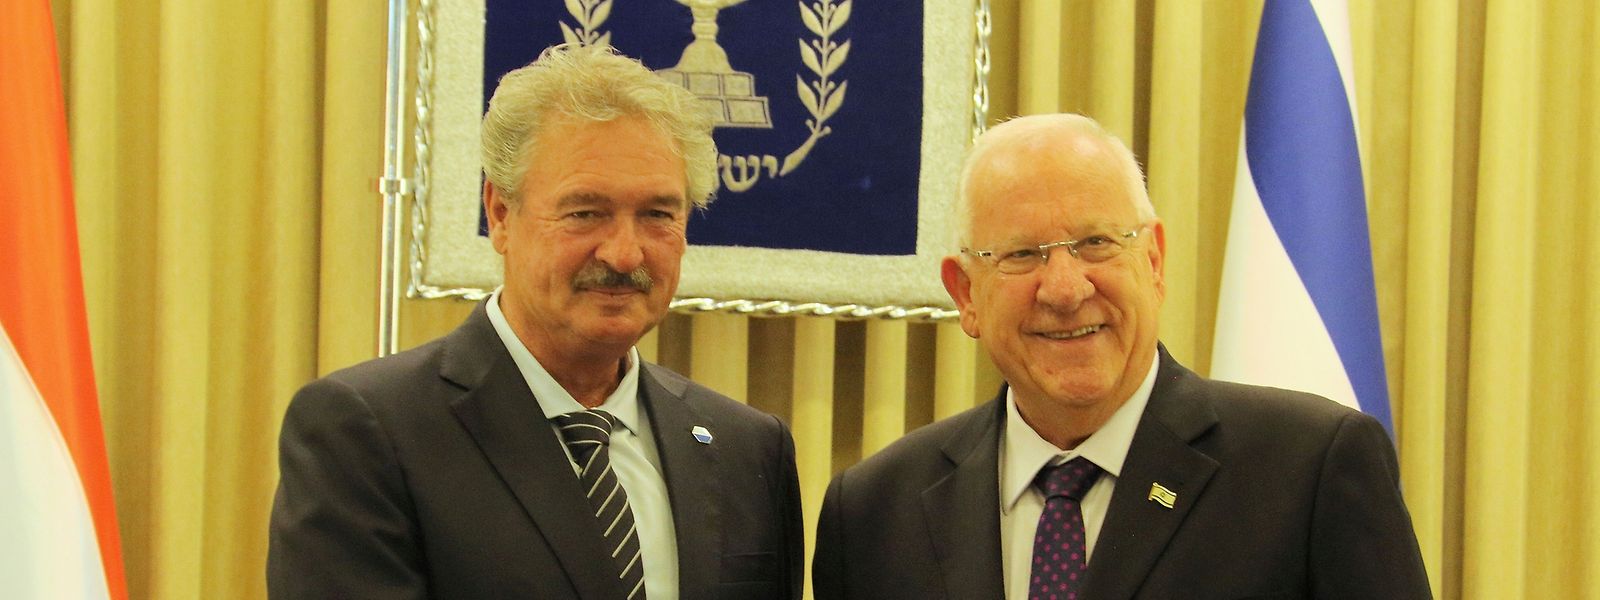 Außenminister Jean Asselborn traf am zweiten Tag seiner Israel-Reise mit Präsident Reuven Rivlin zusammen.